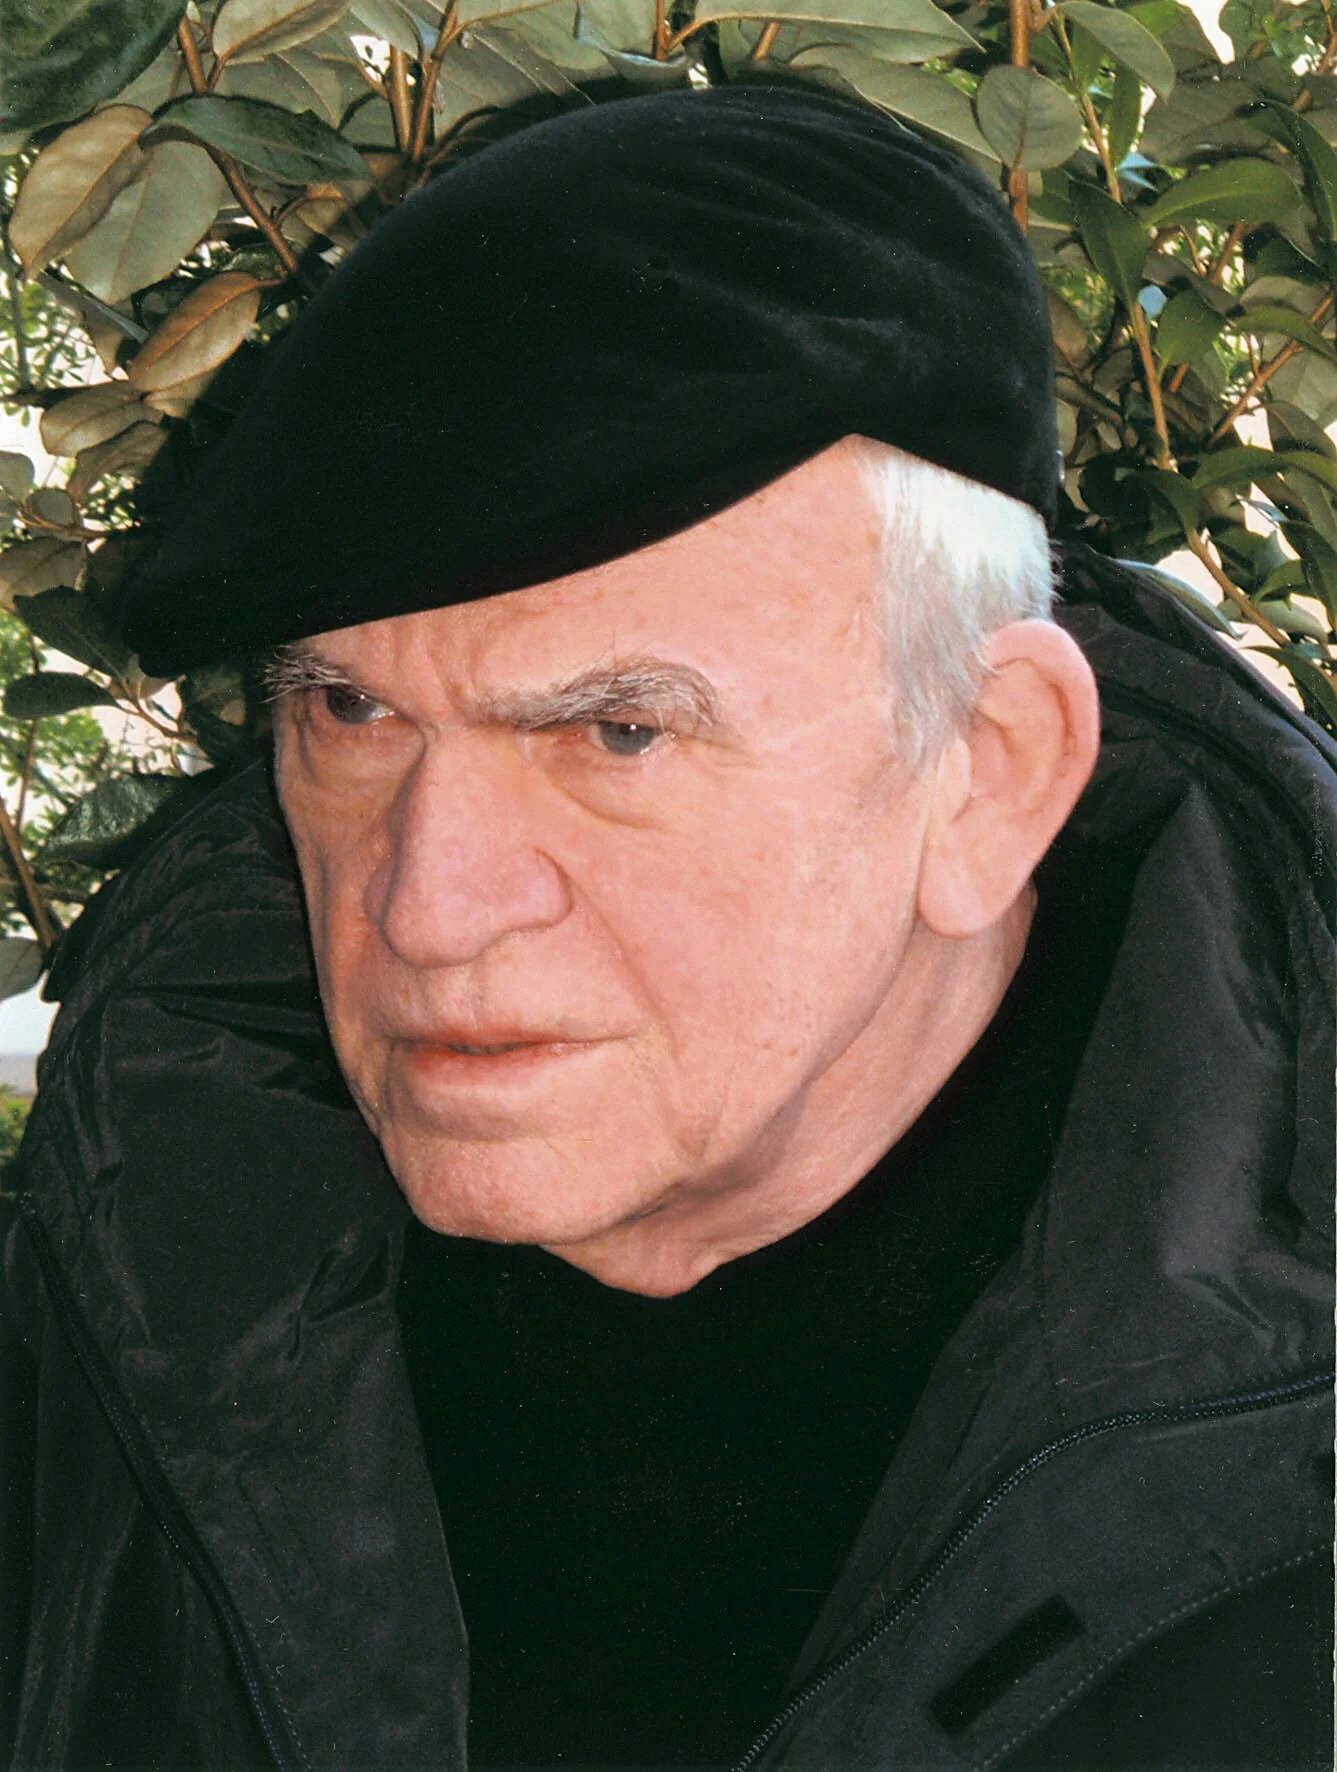 Imagen de 2005 del escritor checo Milan Kundera. EFE
